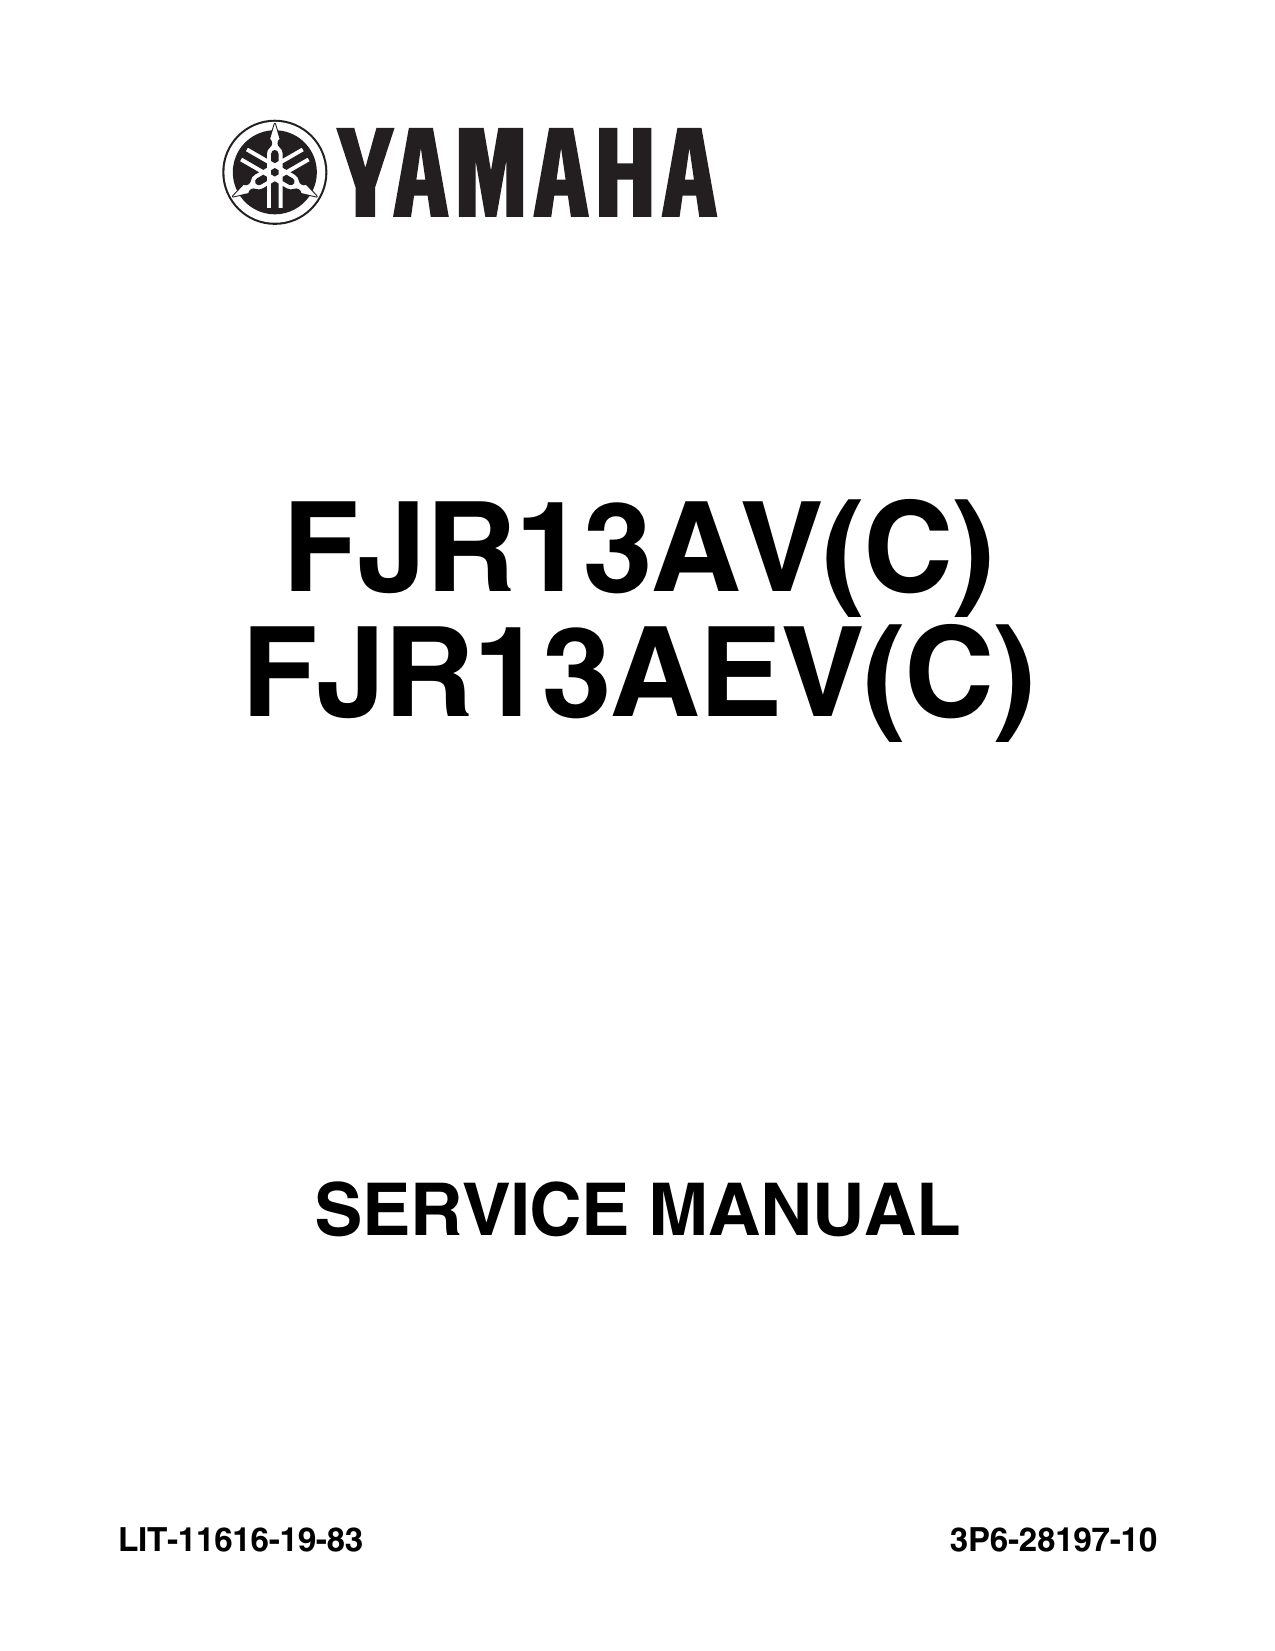 2007 Yamaha FJR1300AV(C), FJR13AEV(C) service and shop manual Preview image 1